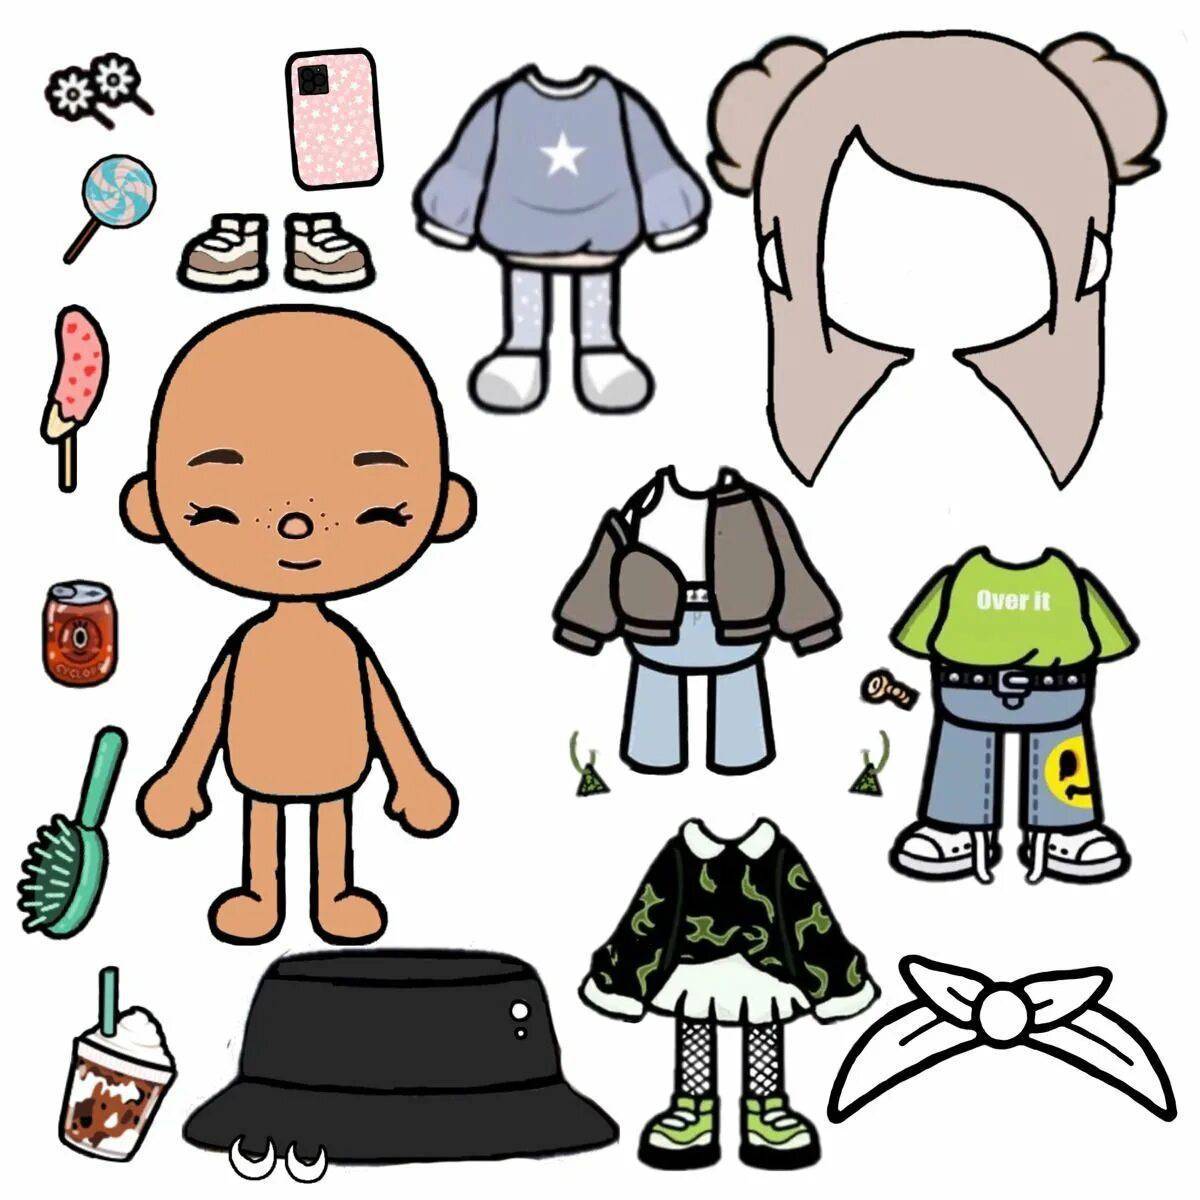 Toca boca распечатки. Кукла toca boca. Бумажные человечки с одеждой. Персонаж для распечатки с одеждой. Человечки из бумаги с одеждой.